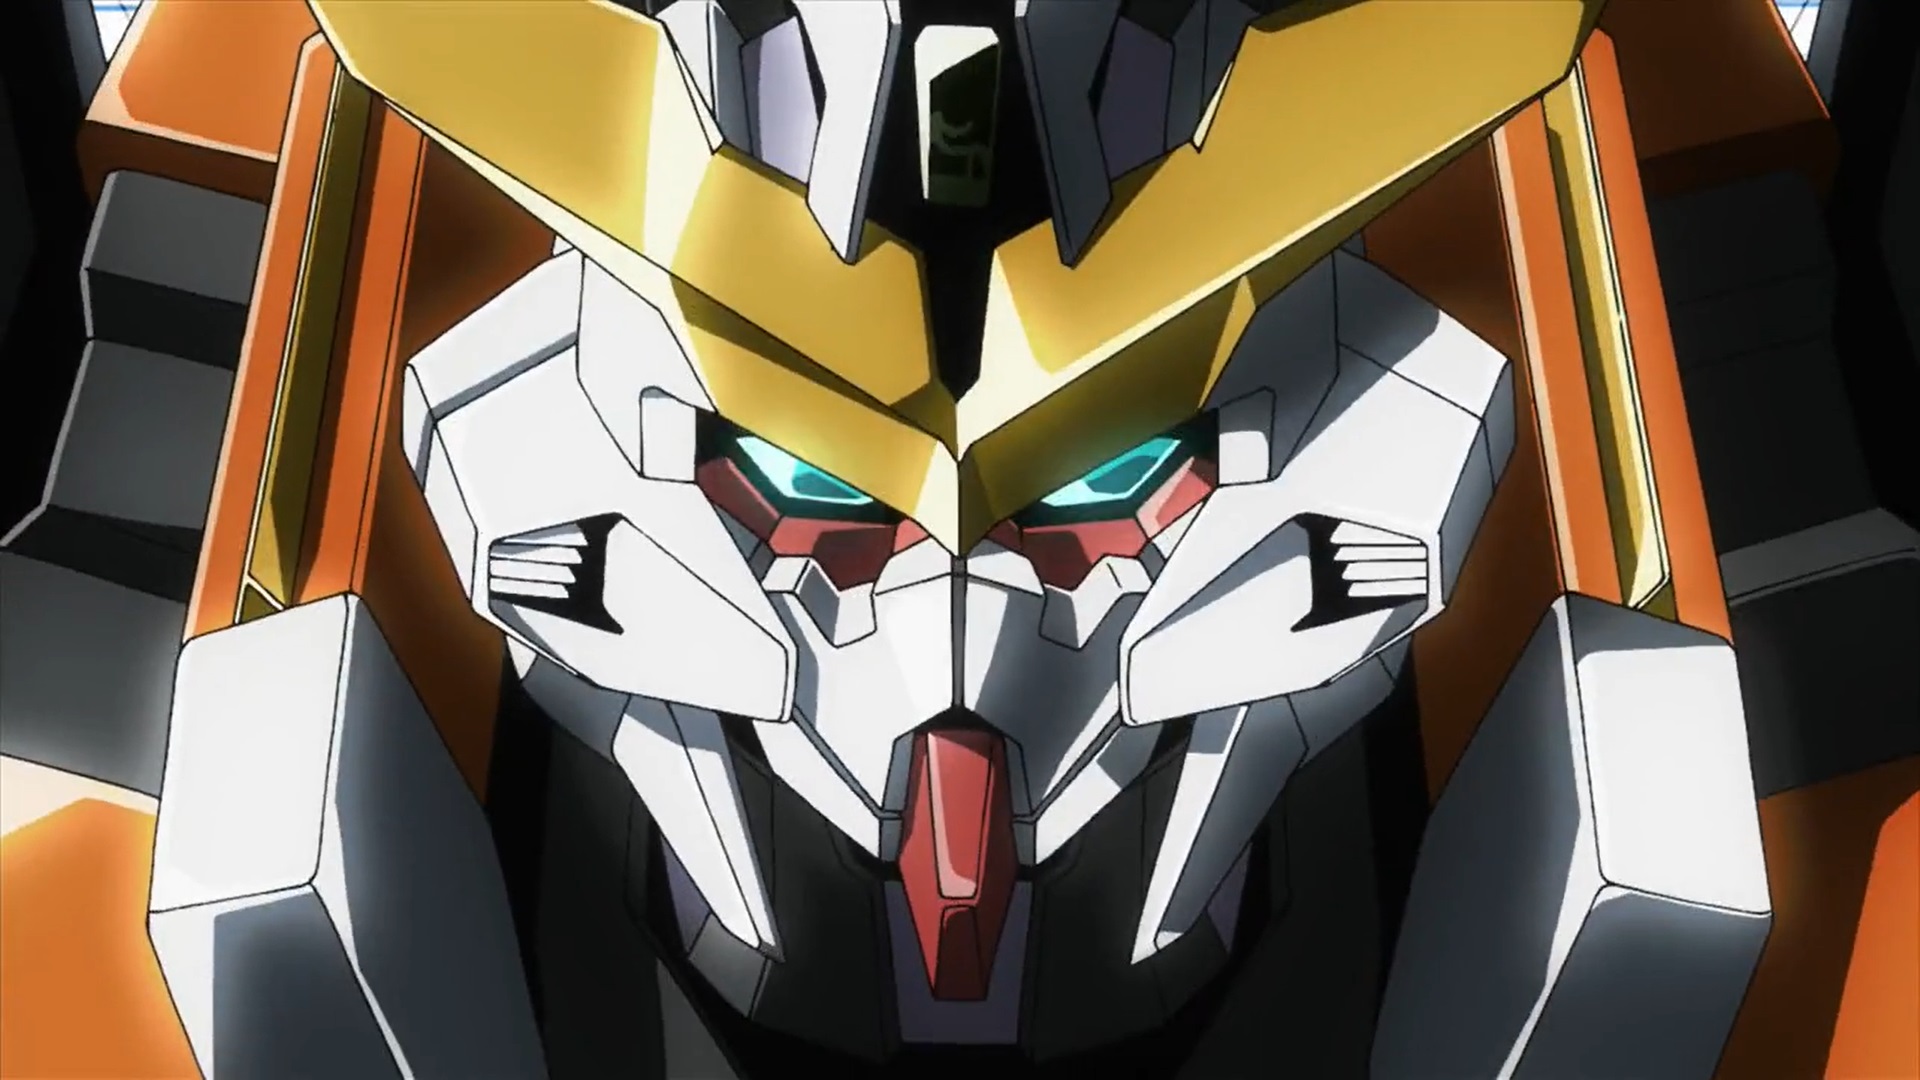 Anime Anime Screenshot Mechs Super Robot Taisen Gundam Mobile Suit Gundam 00 Artwork Digital Art Gun 1920x1080